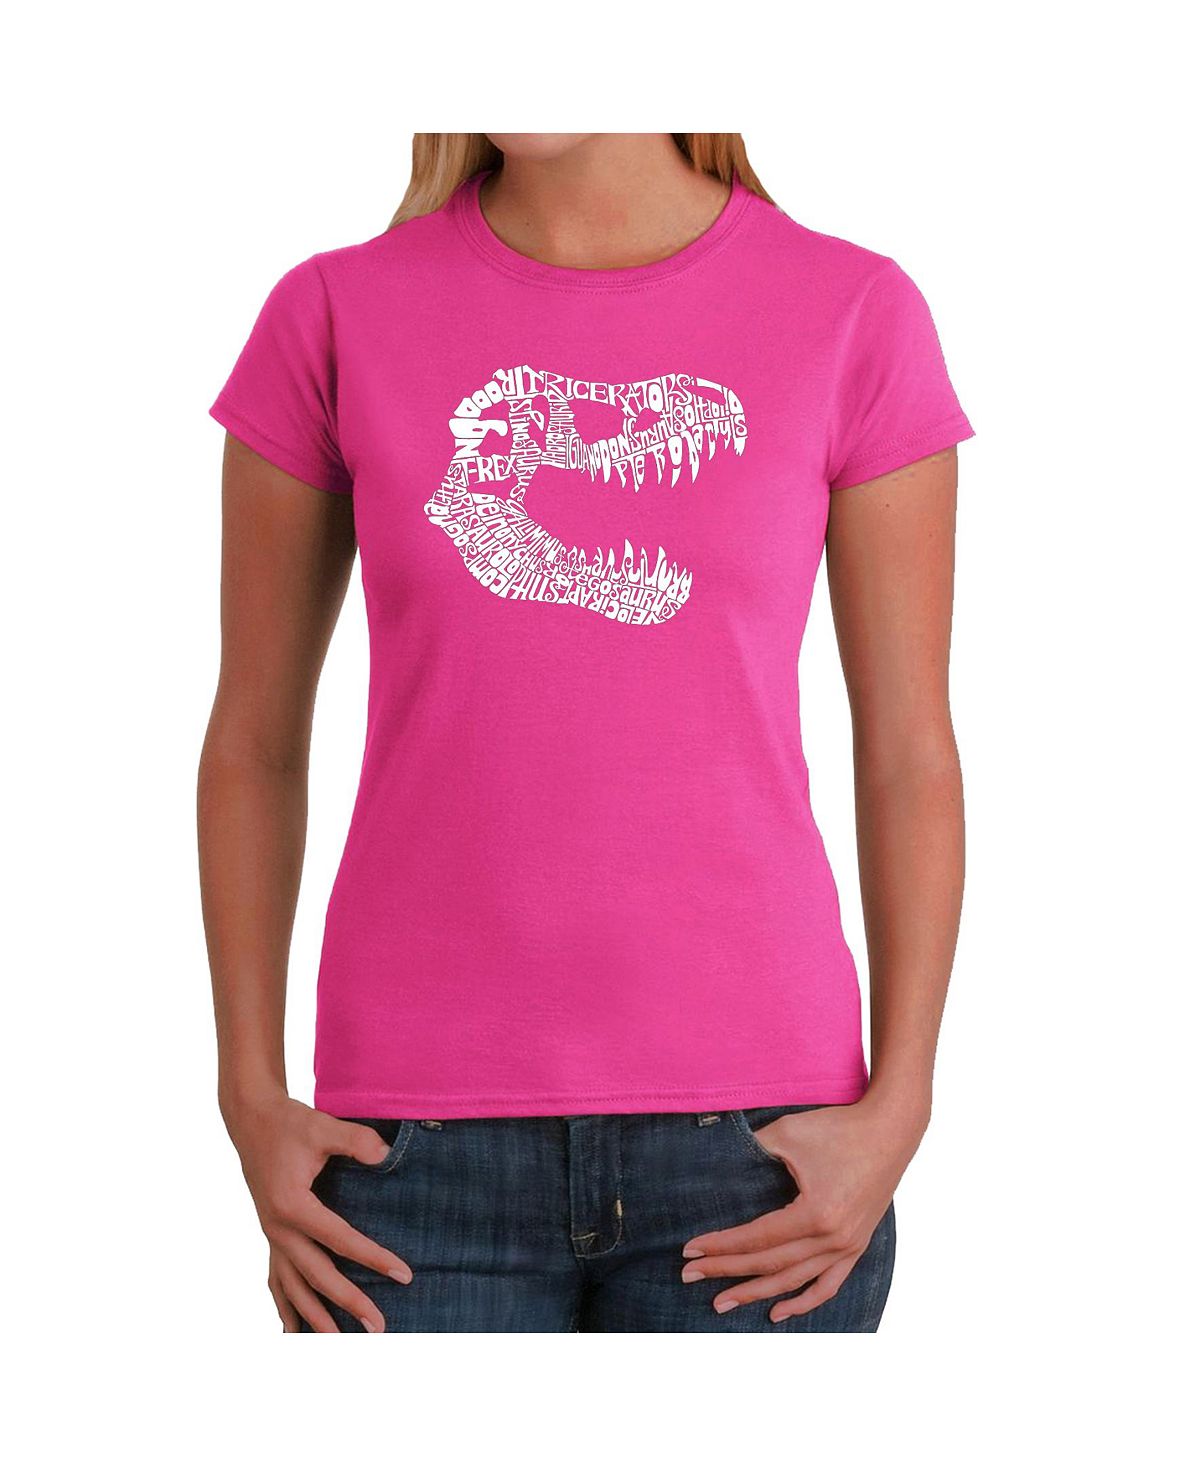 Женская футболка word art - t-rex LA Pop Art, розовый